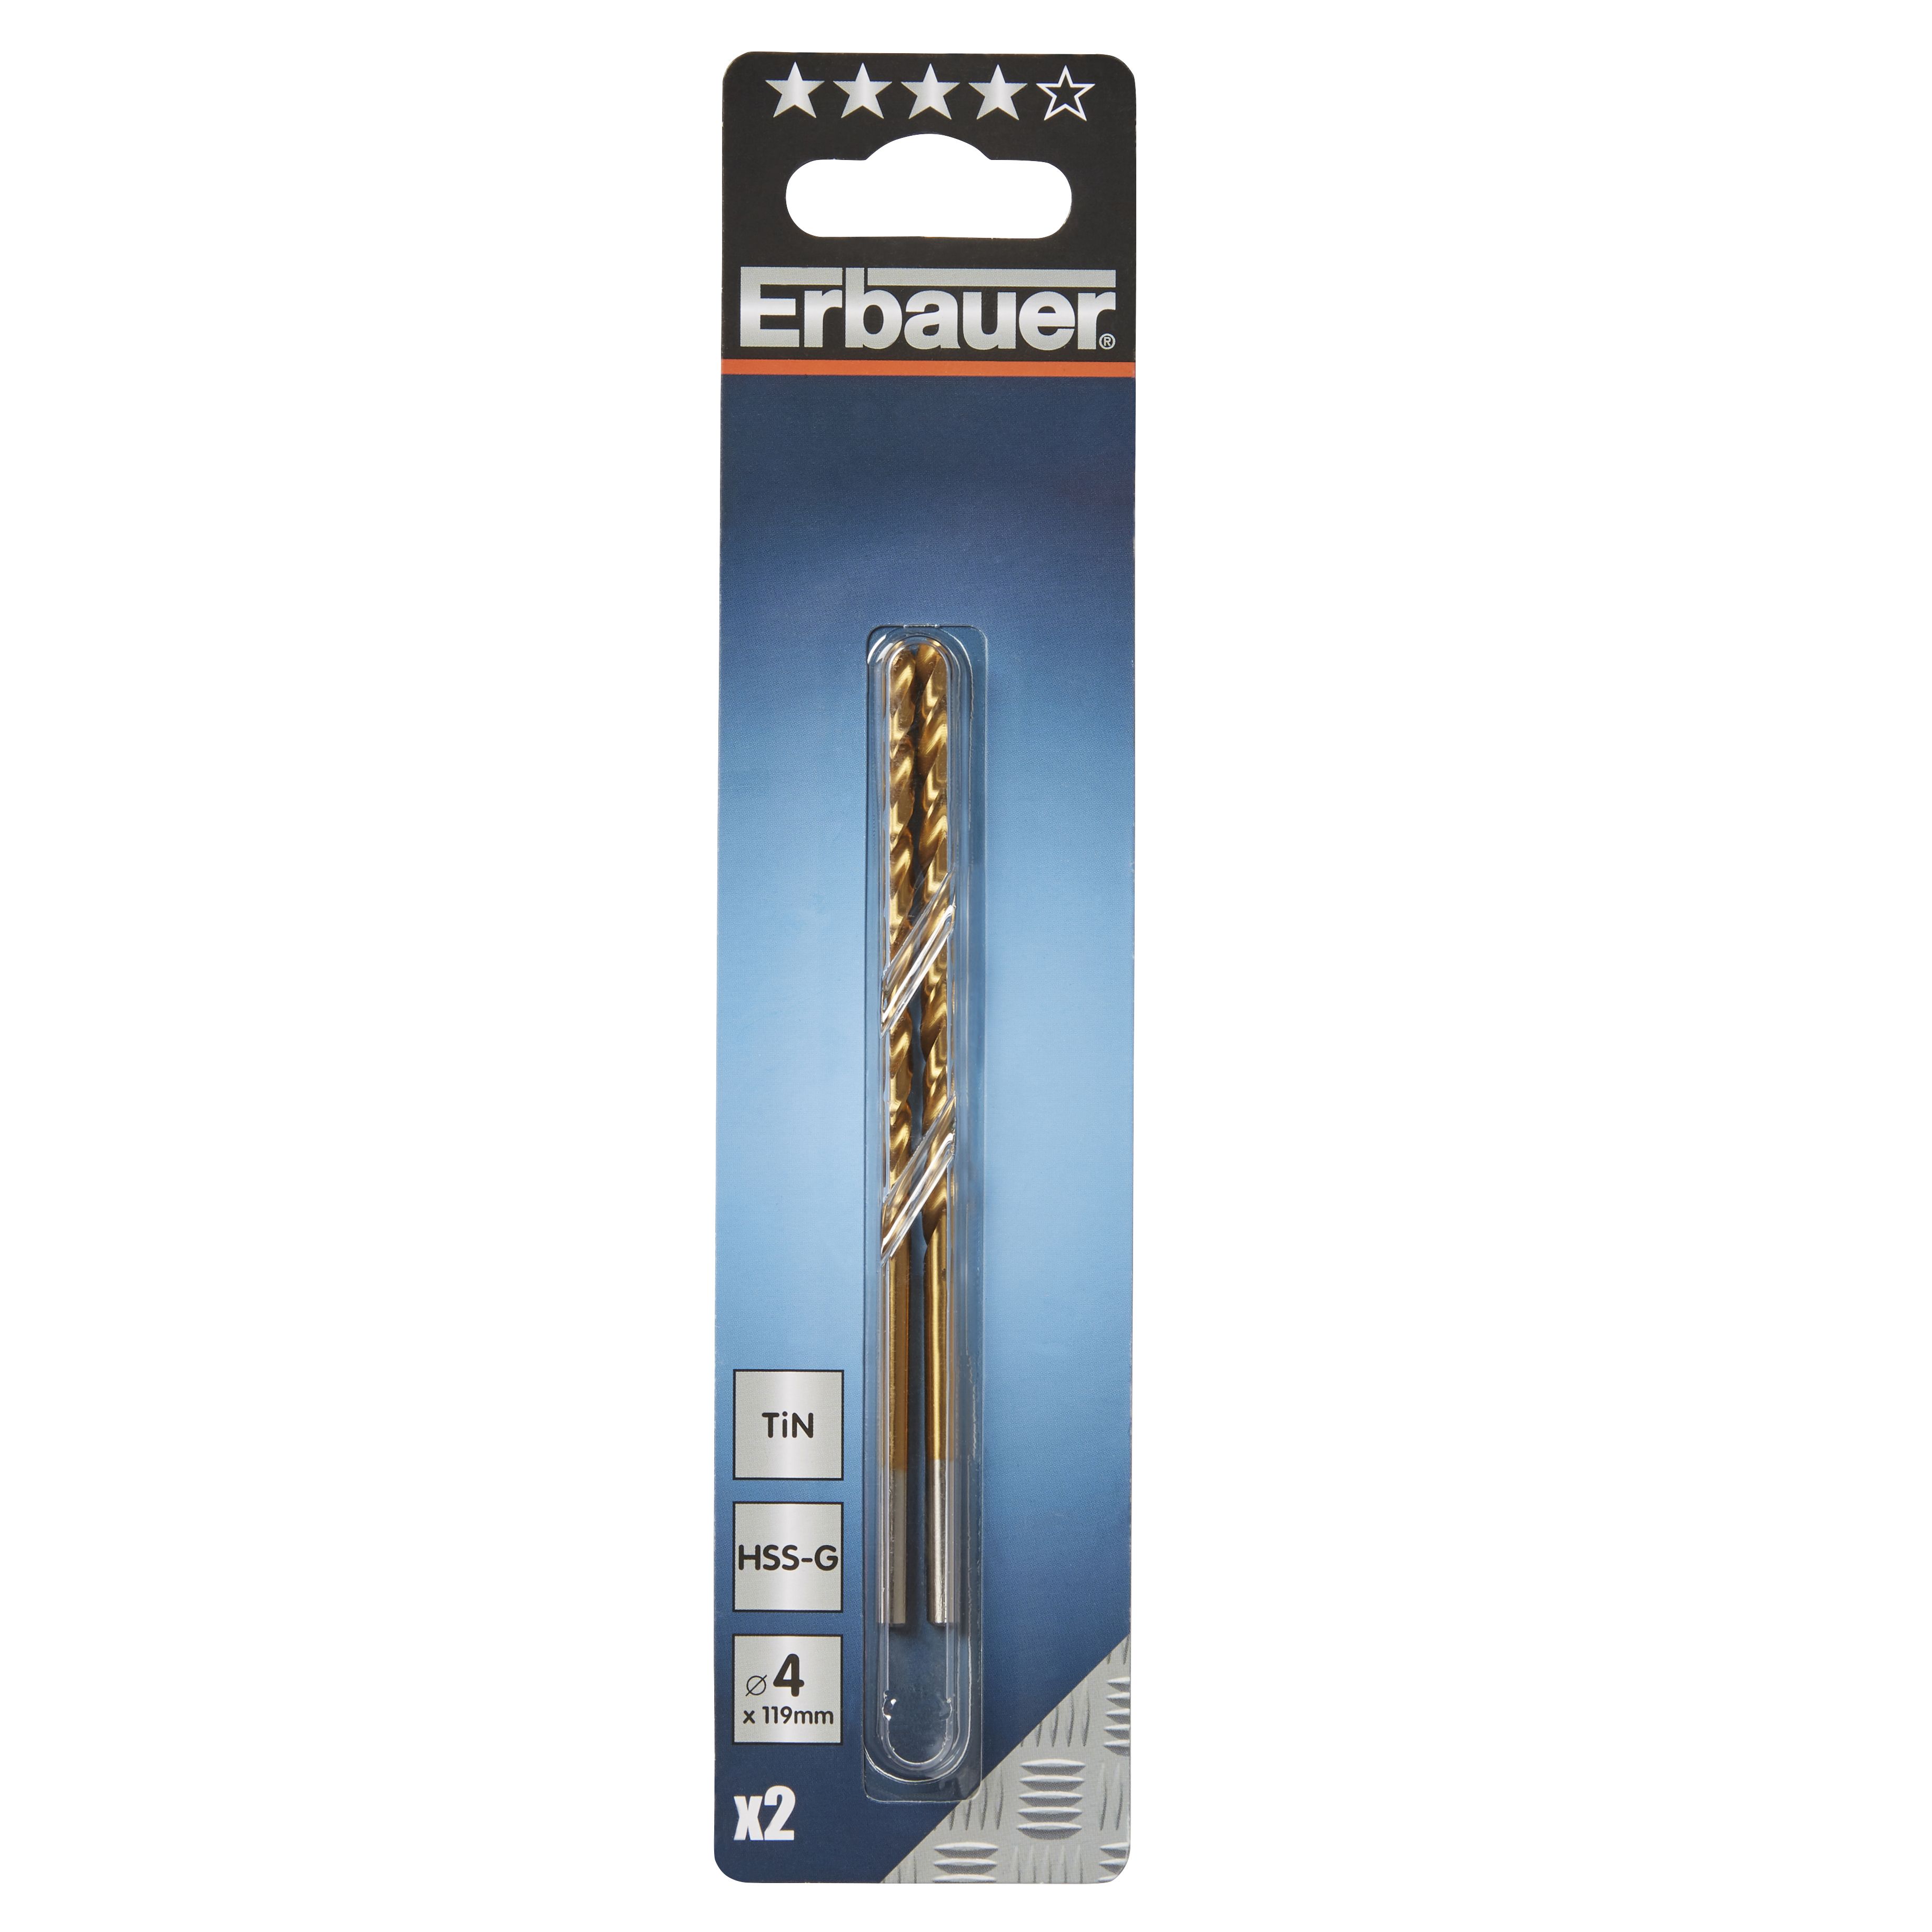 Erbauer Metal Drill bit (Dia)4mm (L)119mm, Pack of 2